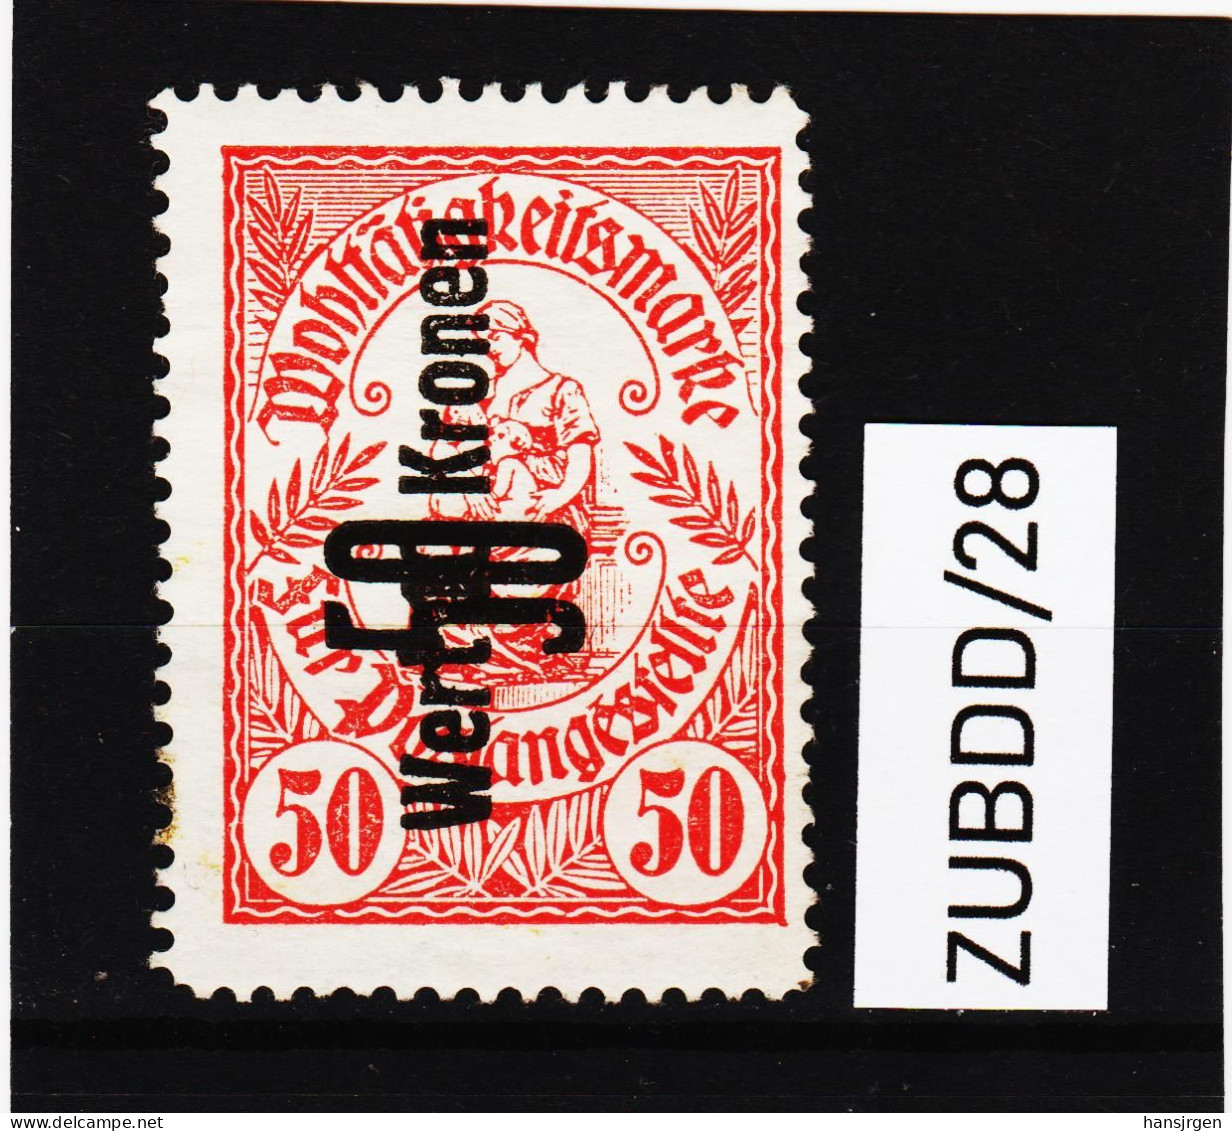 ZUBDD/28 STEMPELMARKEN FISKALMARKE WOHLTÄTIGKEITSMARKE Für Postangestellte 50 HELLER Gummiert SIEHE ABBILDUNG - Revenue Stamps